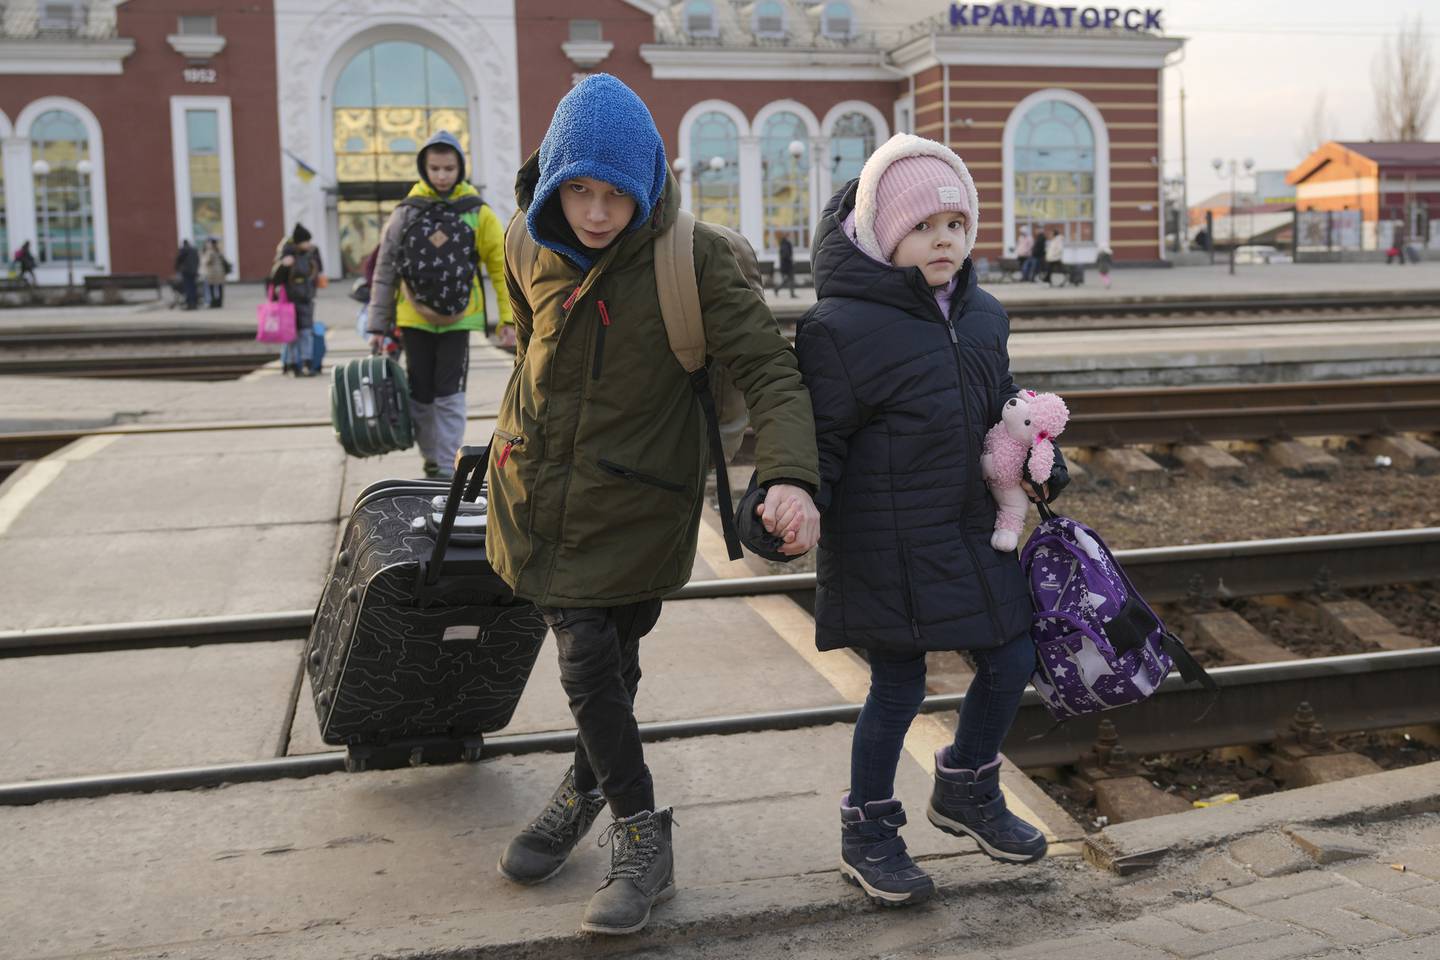 Ukrainske myndigheter har bedt innbyggerne i Luhansk og Donetsk om å evakuere eller risikere å risikere å miste livet. Disse barna i Kramatorsk i Donetsk forlot området 24. februar, dagen da Russland invaderte Ukraina.